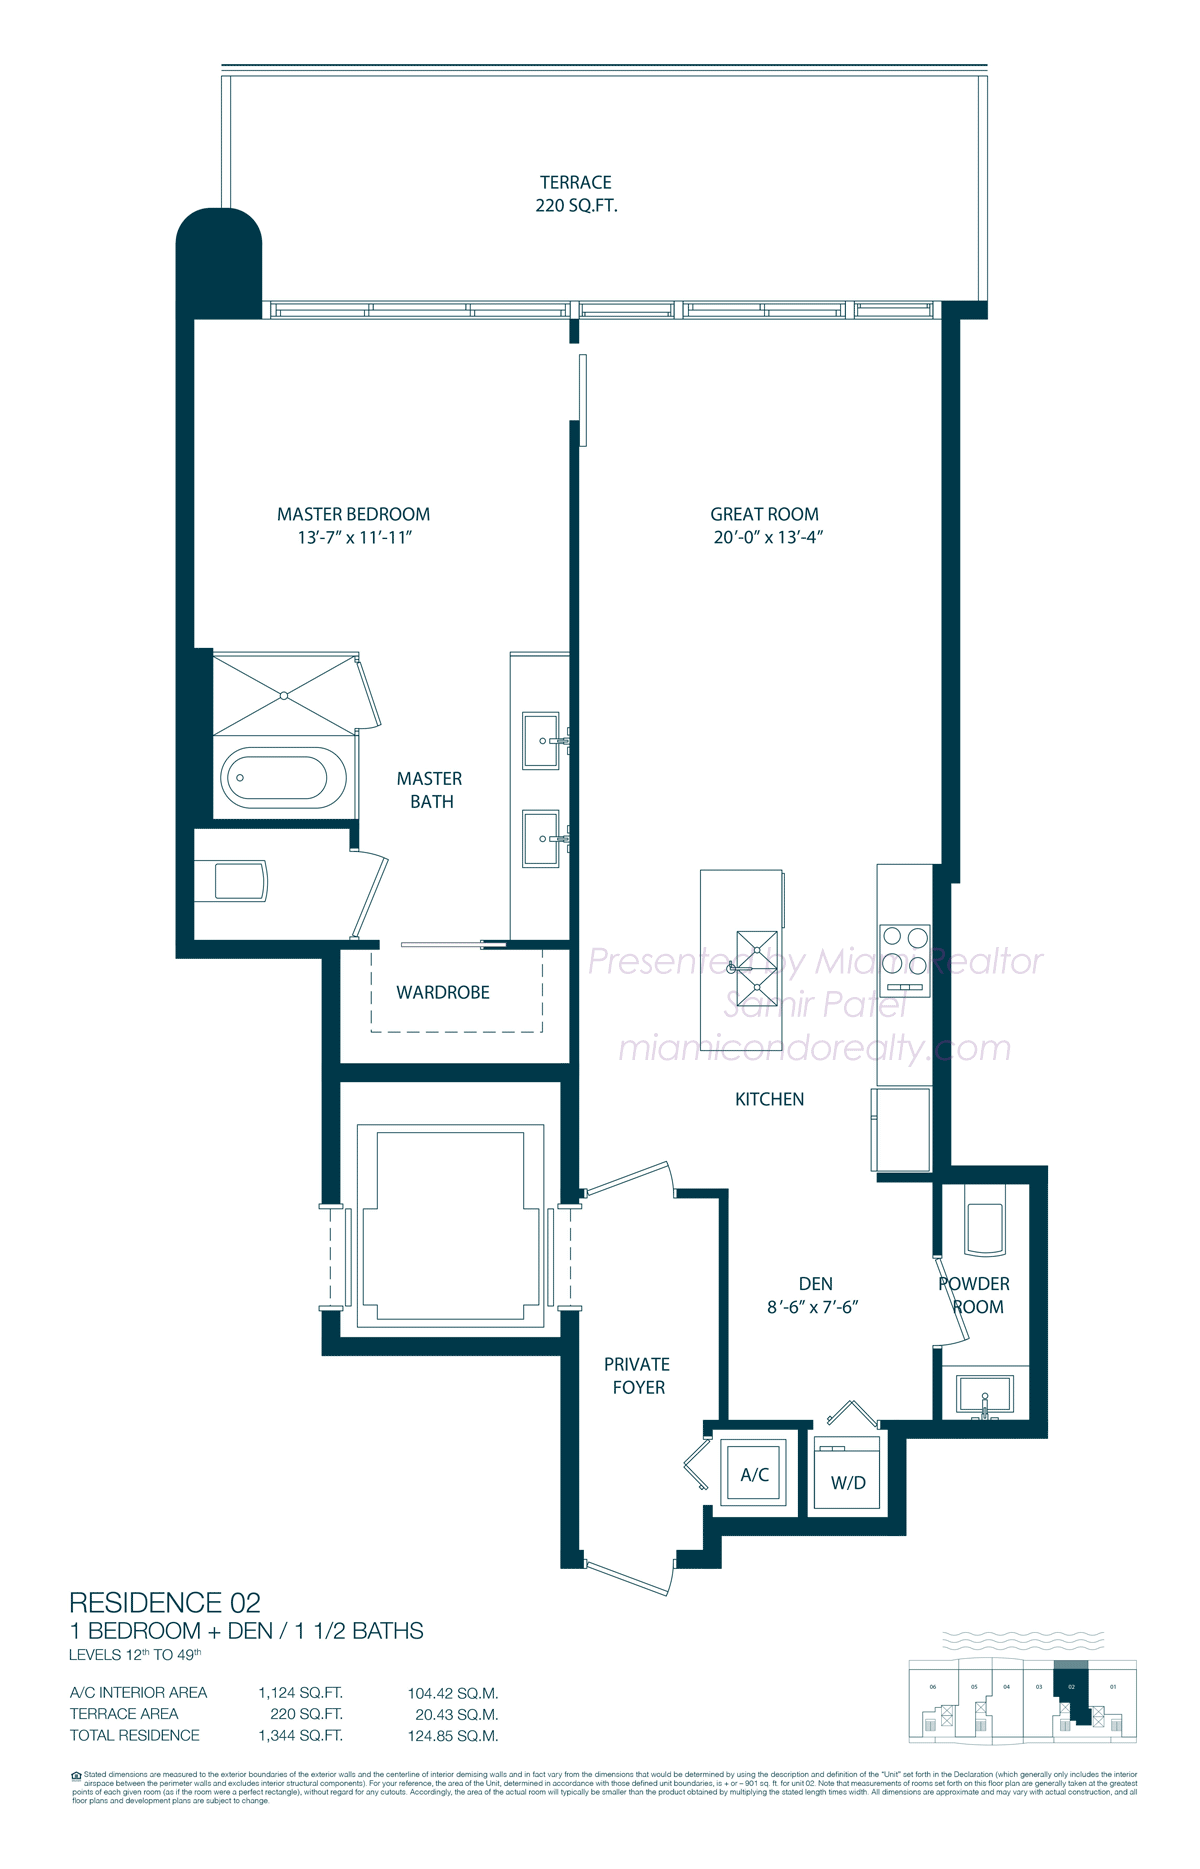 Floorplan of One Paraiso Condominium of 02 Line in Building